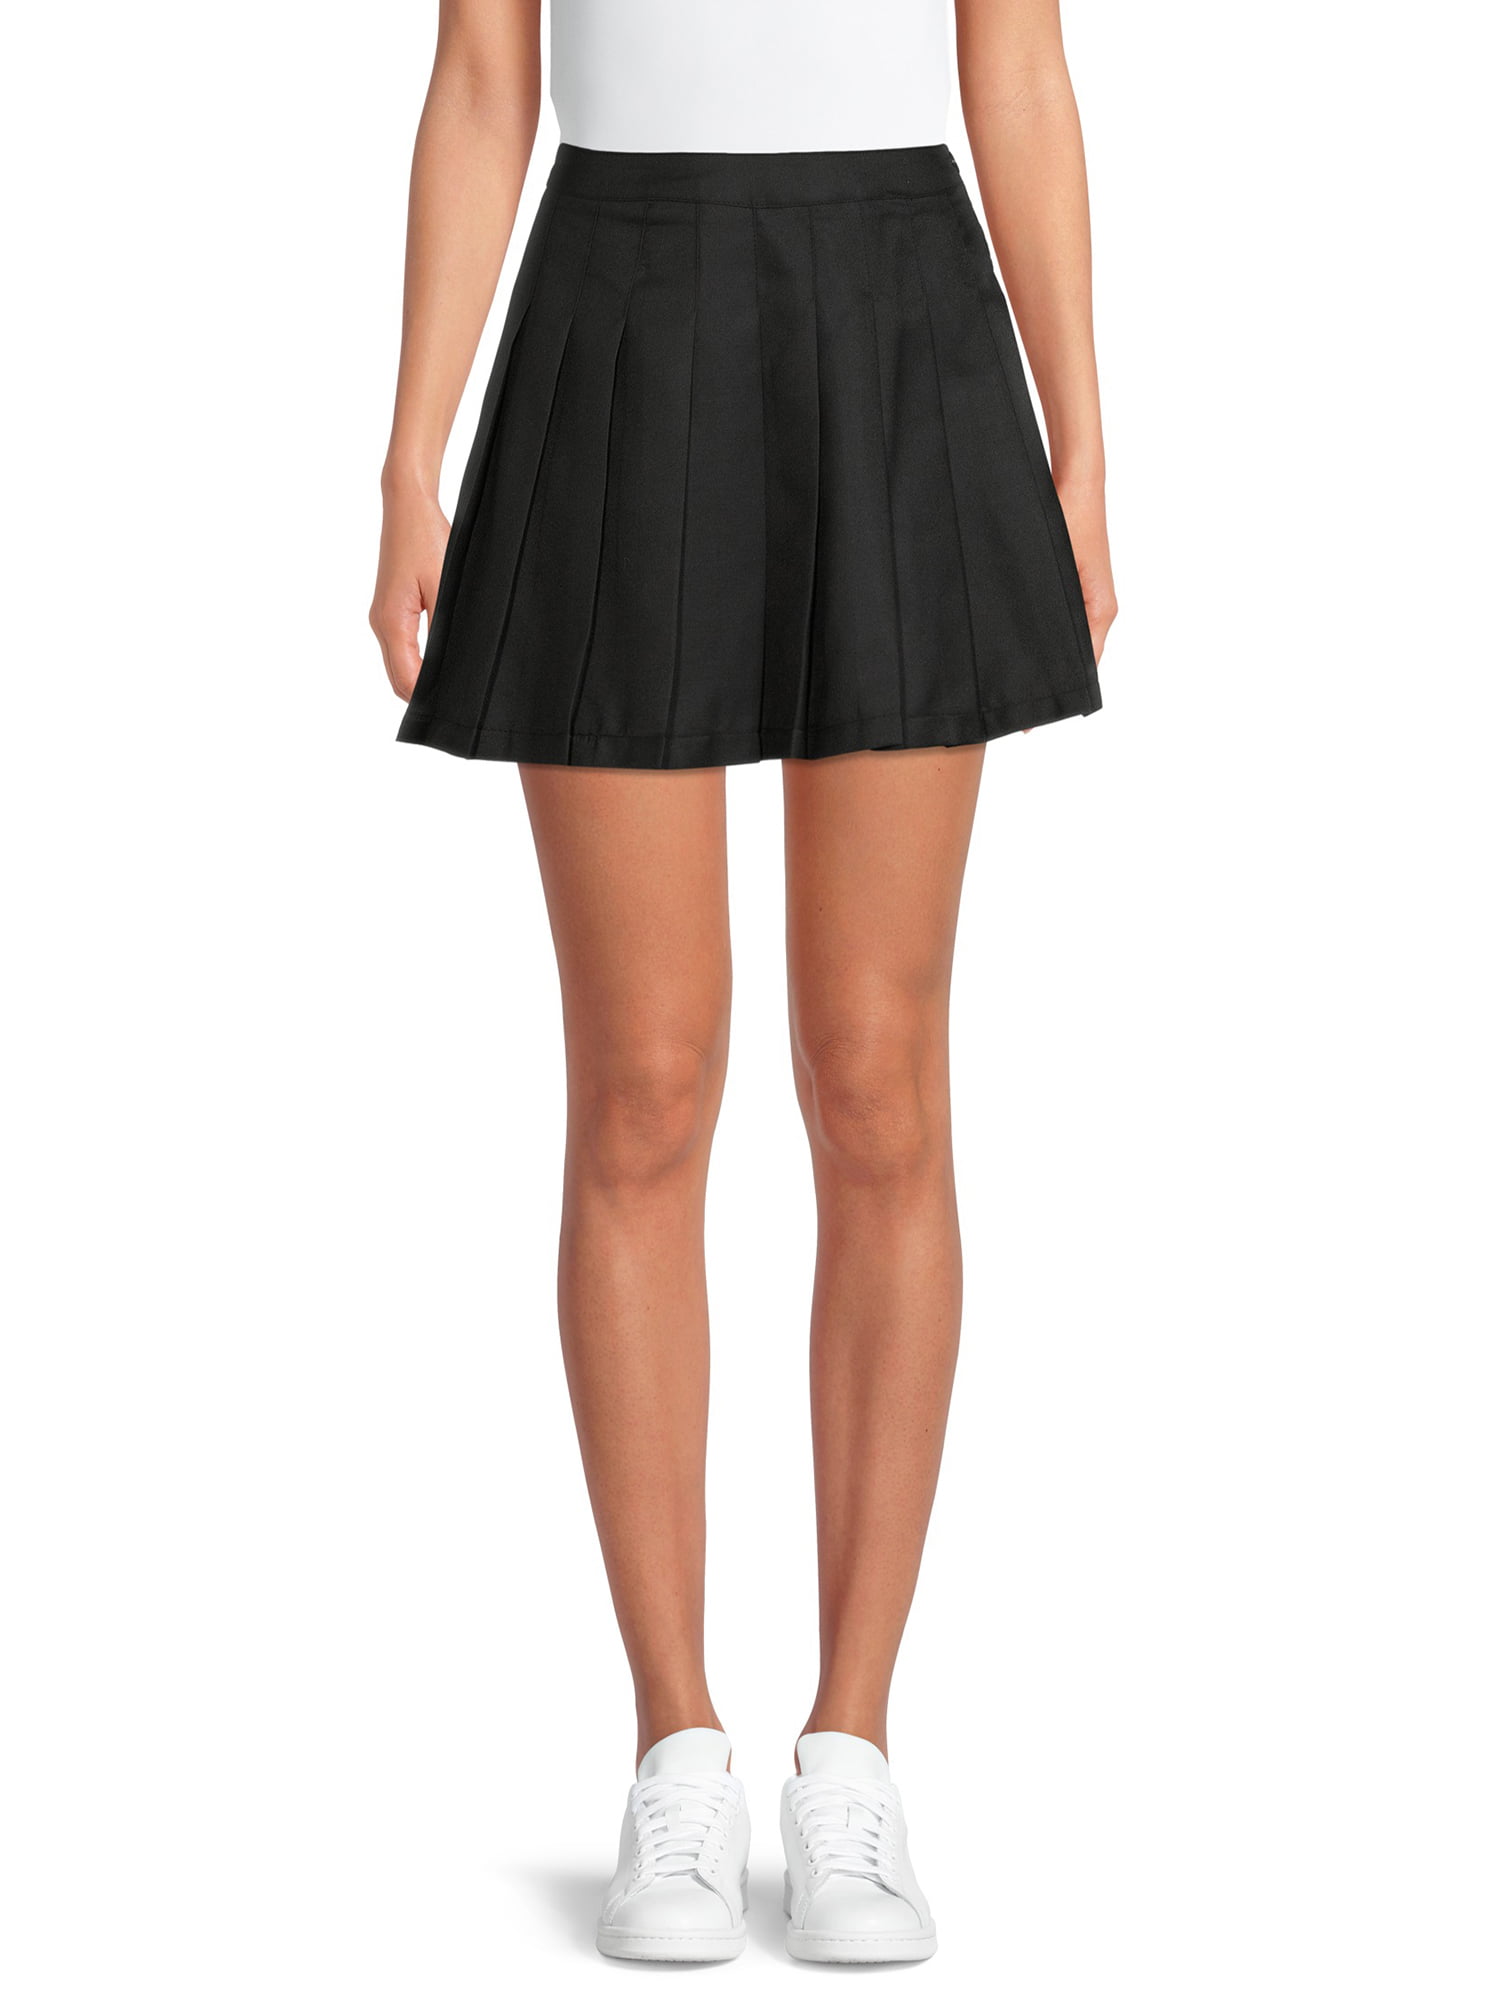 Vintage Skirt   Cream Skirt  Inverted Pleat Skirt  A line Skirt  70s Skirt   Waist 28